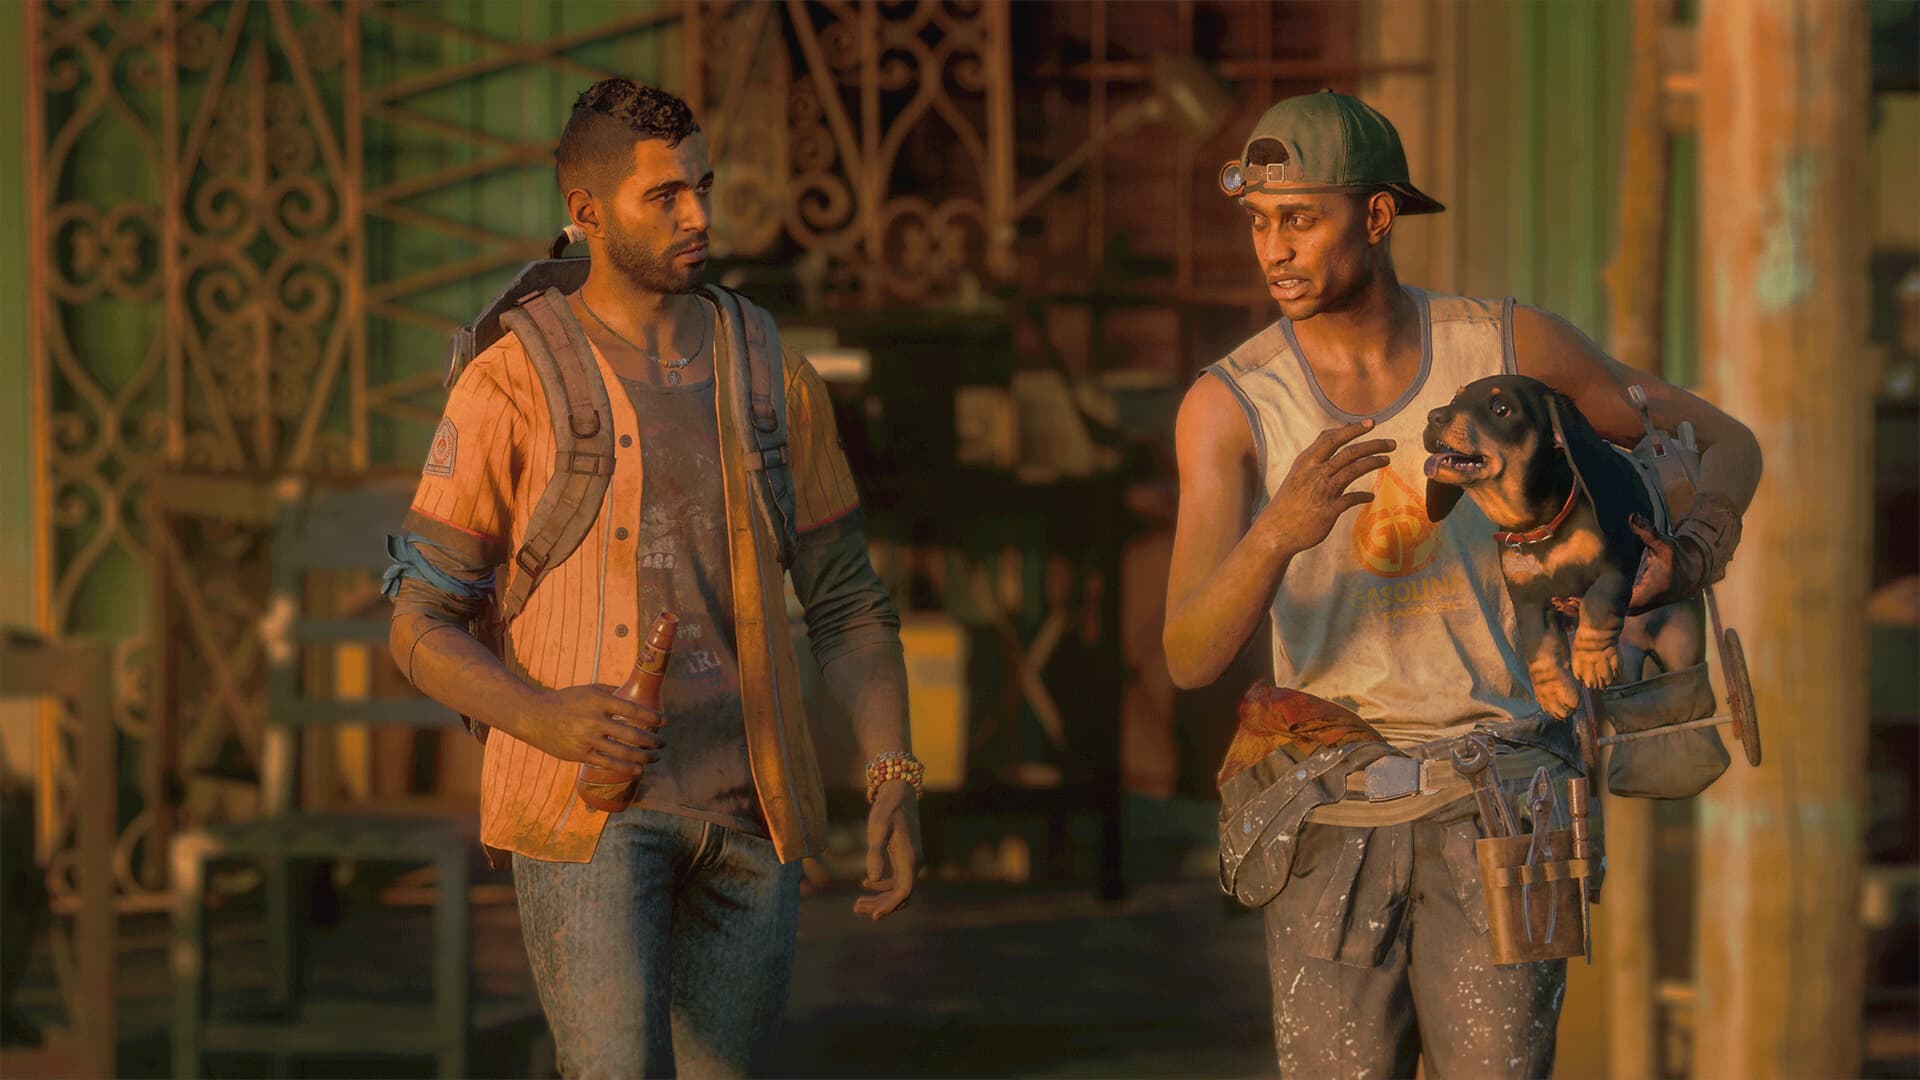 Far Cry 6 e Rogue Legacy 2 são novos games da PS Plus Extra em junho